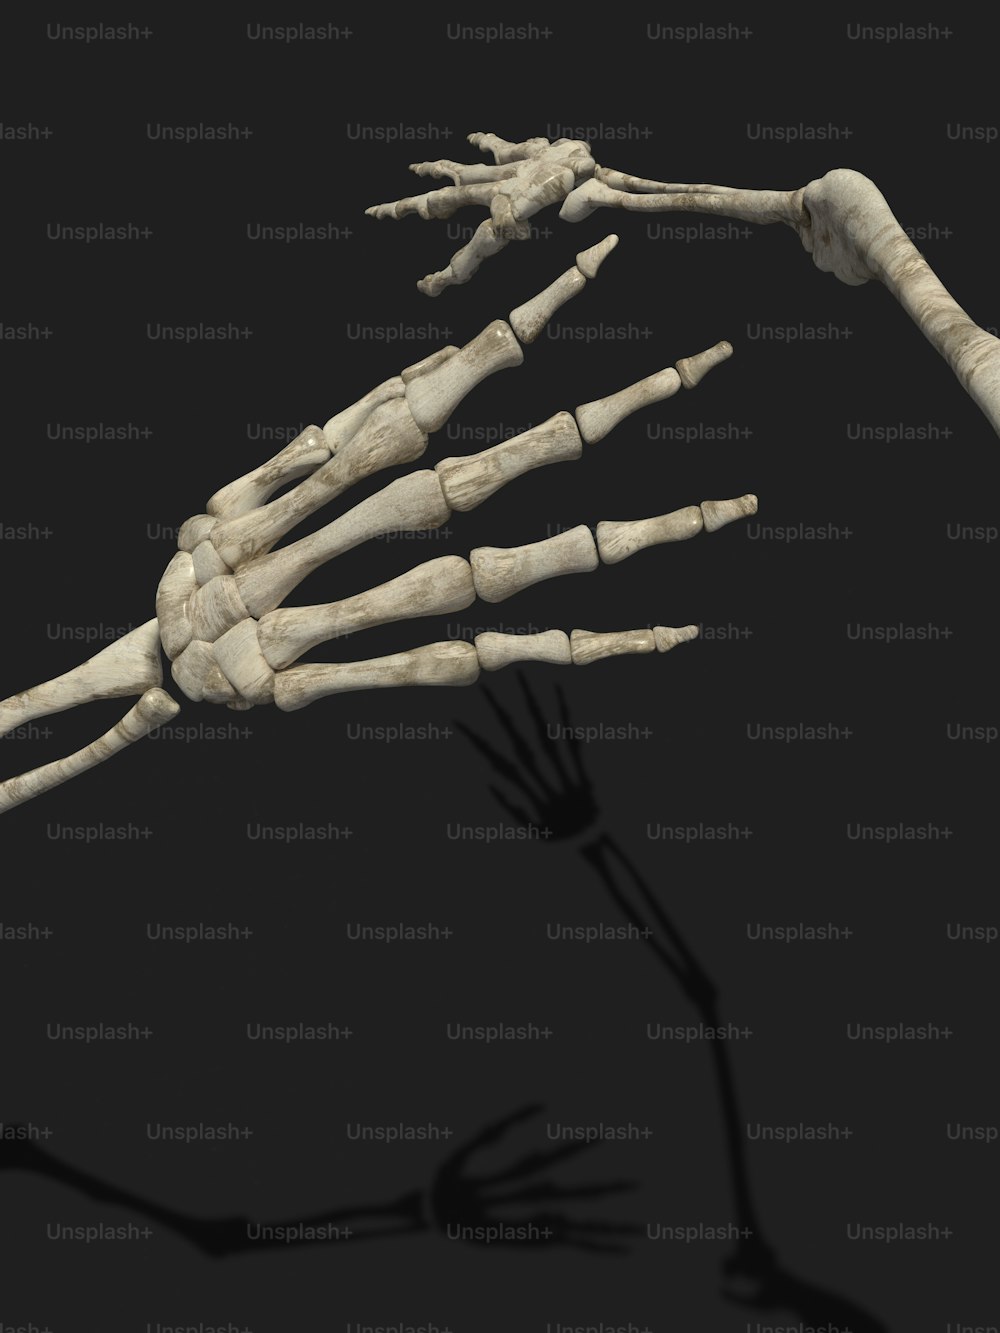 El esqueleto de una persona se muestra en esta imagen